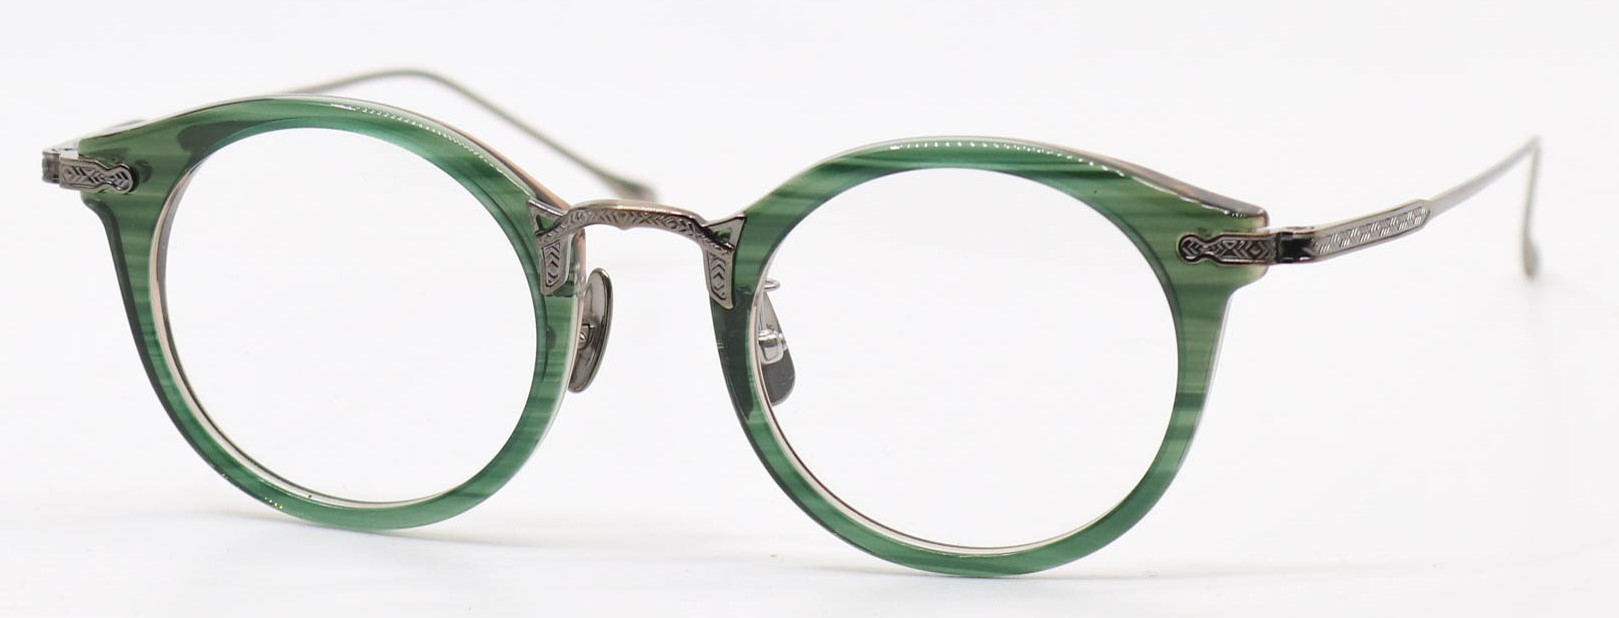 眼鏡のカラータイプC-5 Green-Brown/At-Gold